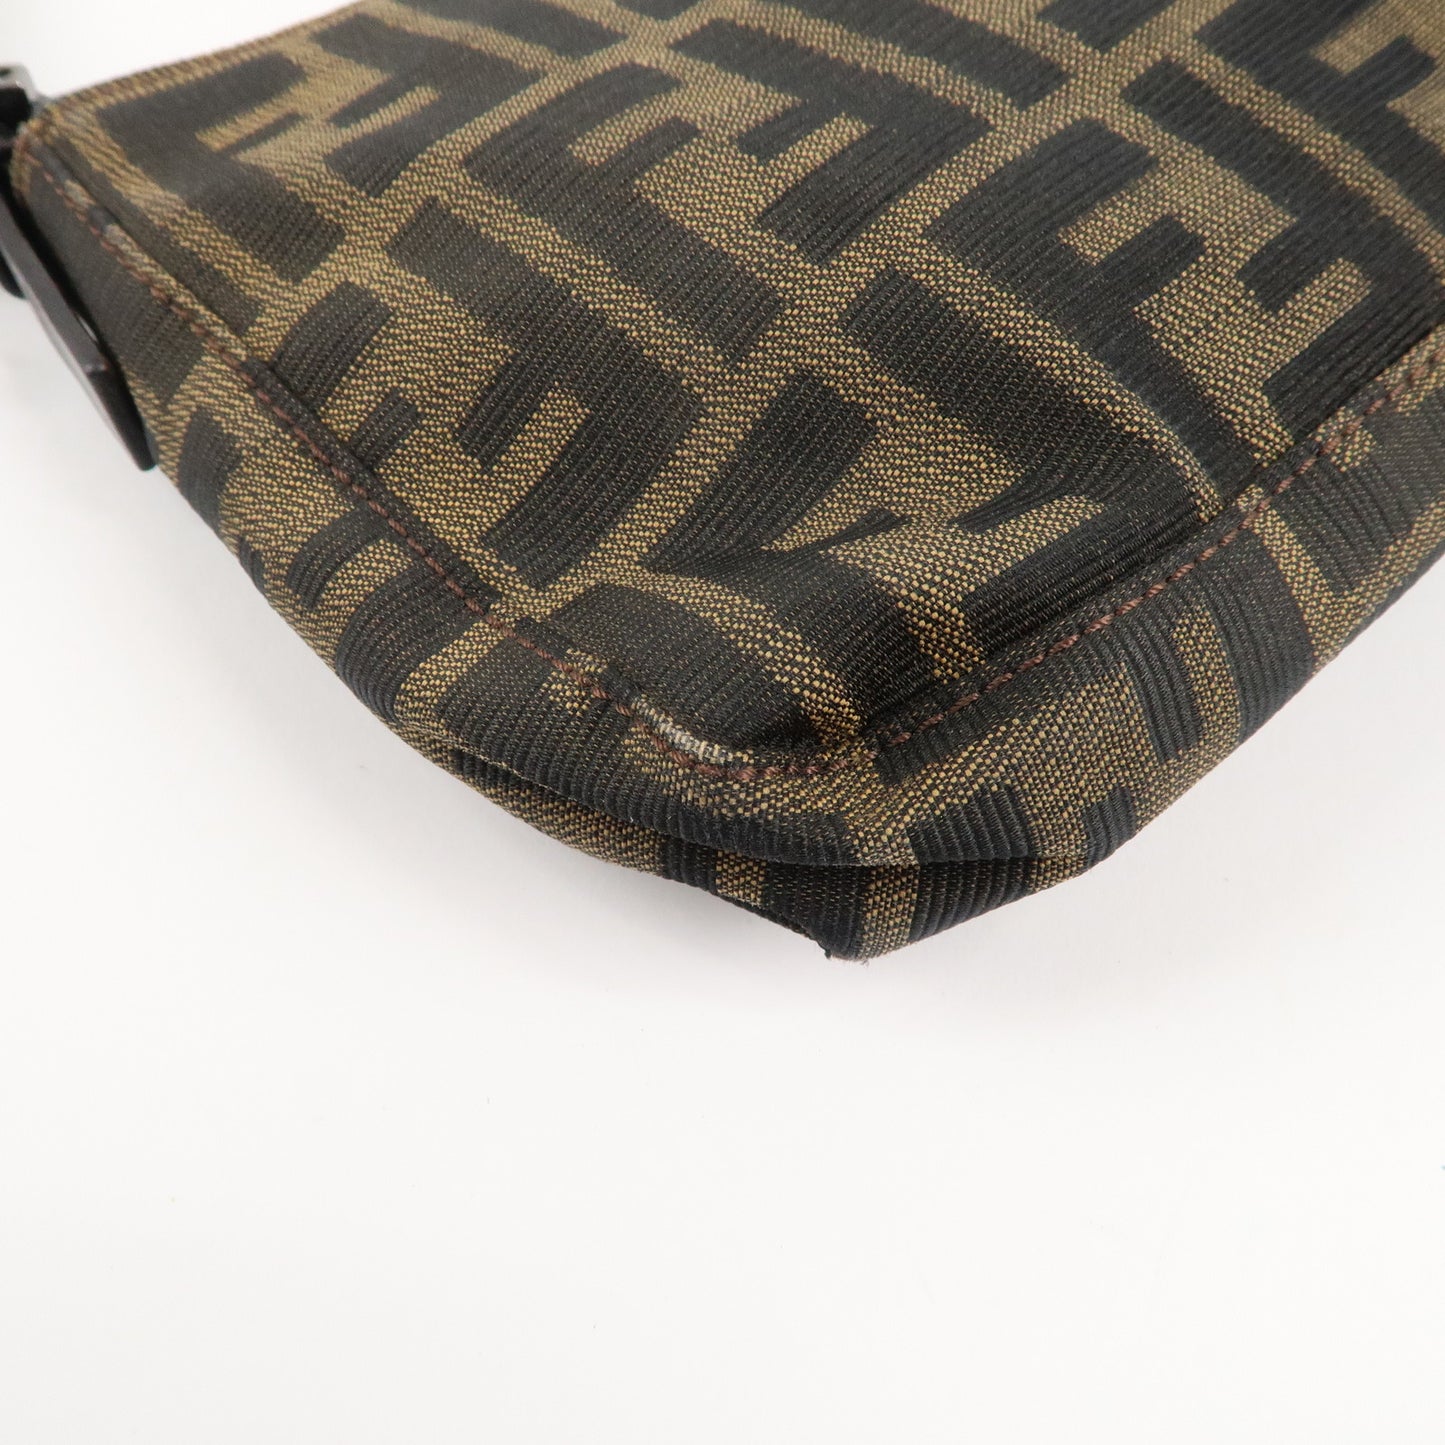 FENDI Zucca Canvas Leather Handbag Shoulder Bag Brown Black